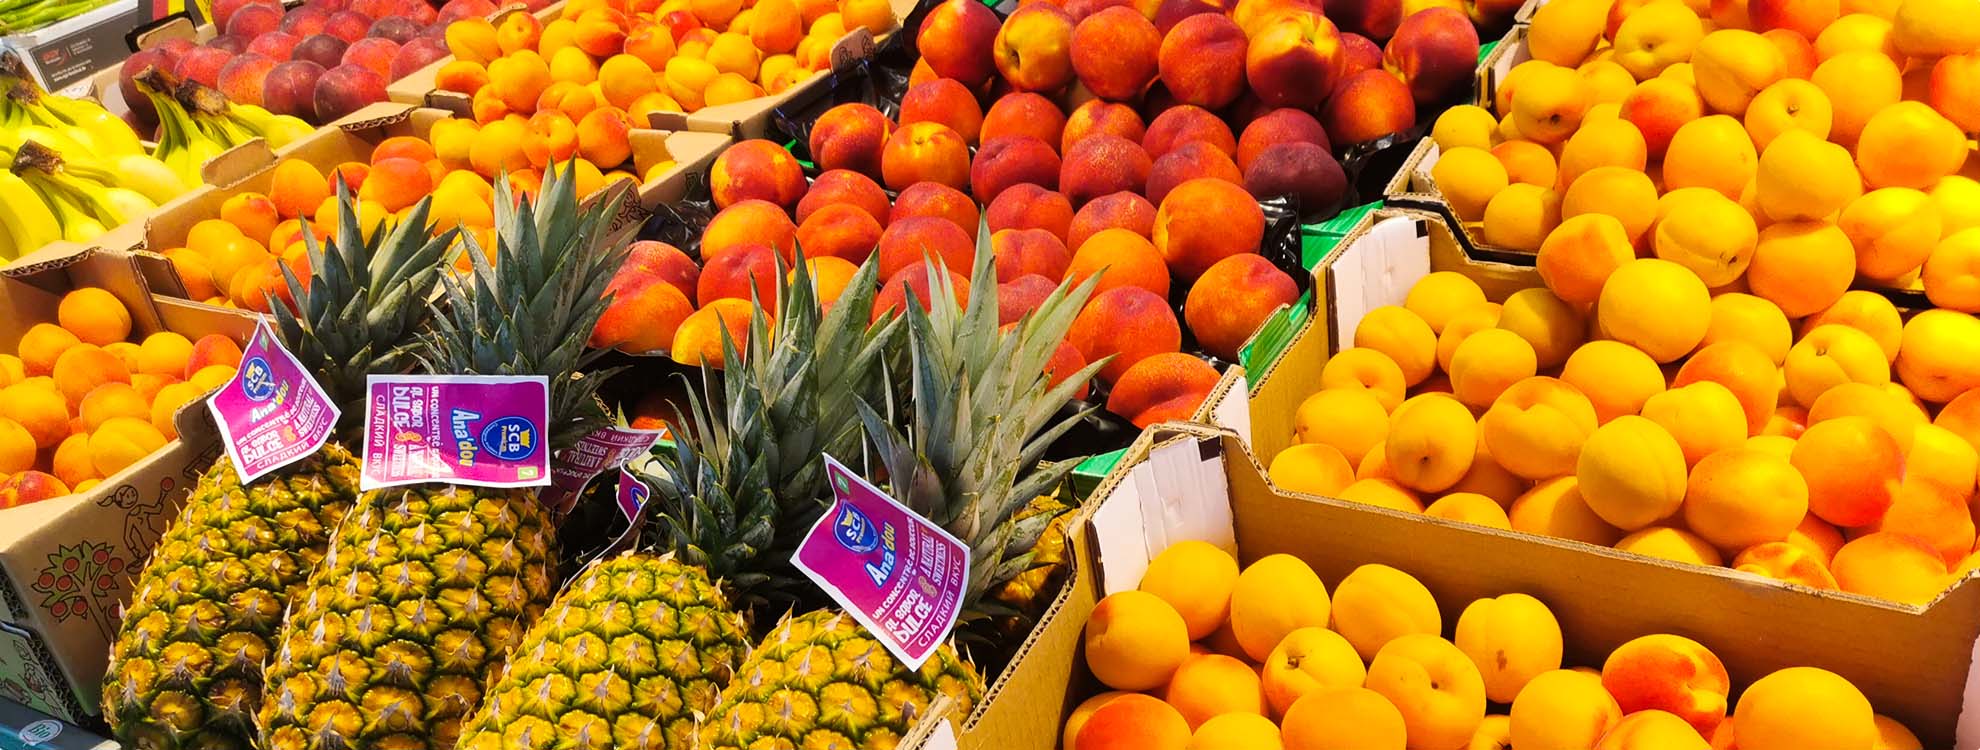 Frisches Obst vom Markt auf den Bild sind Südfrüchte abgebildet